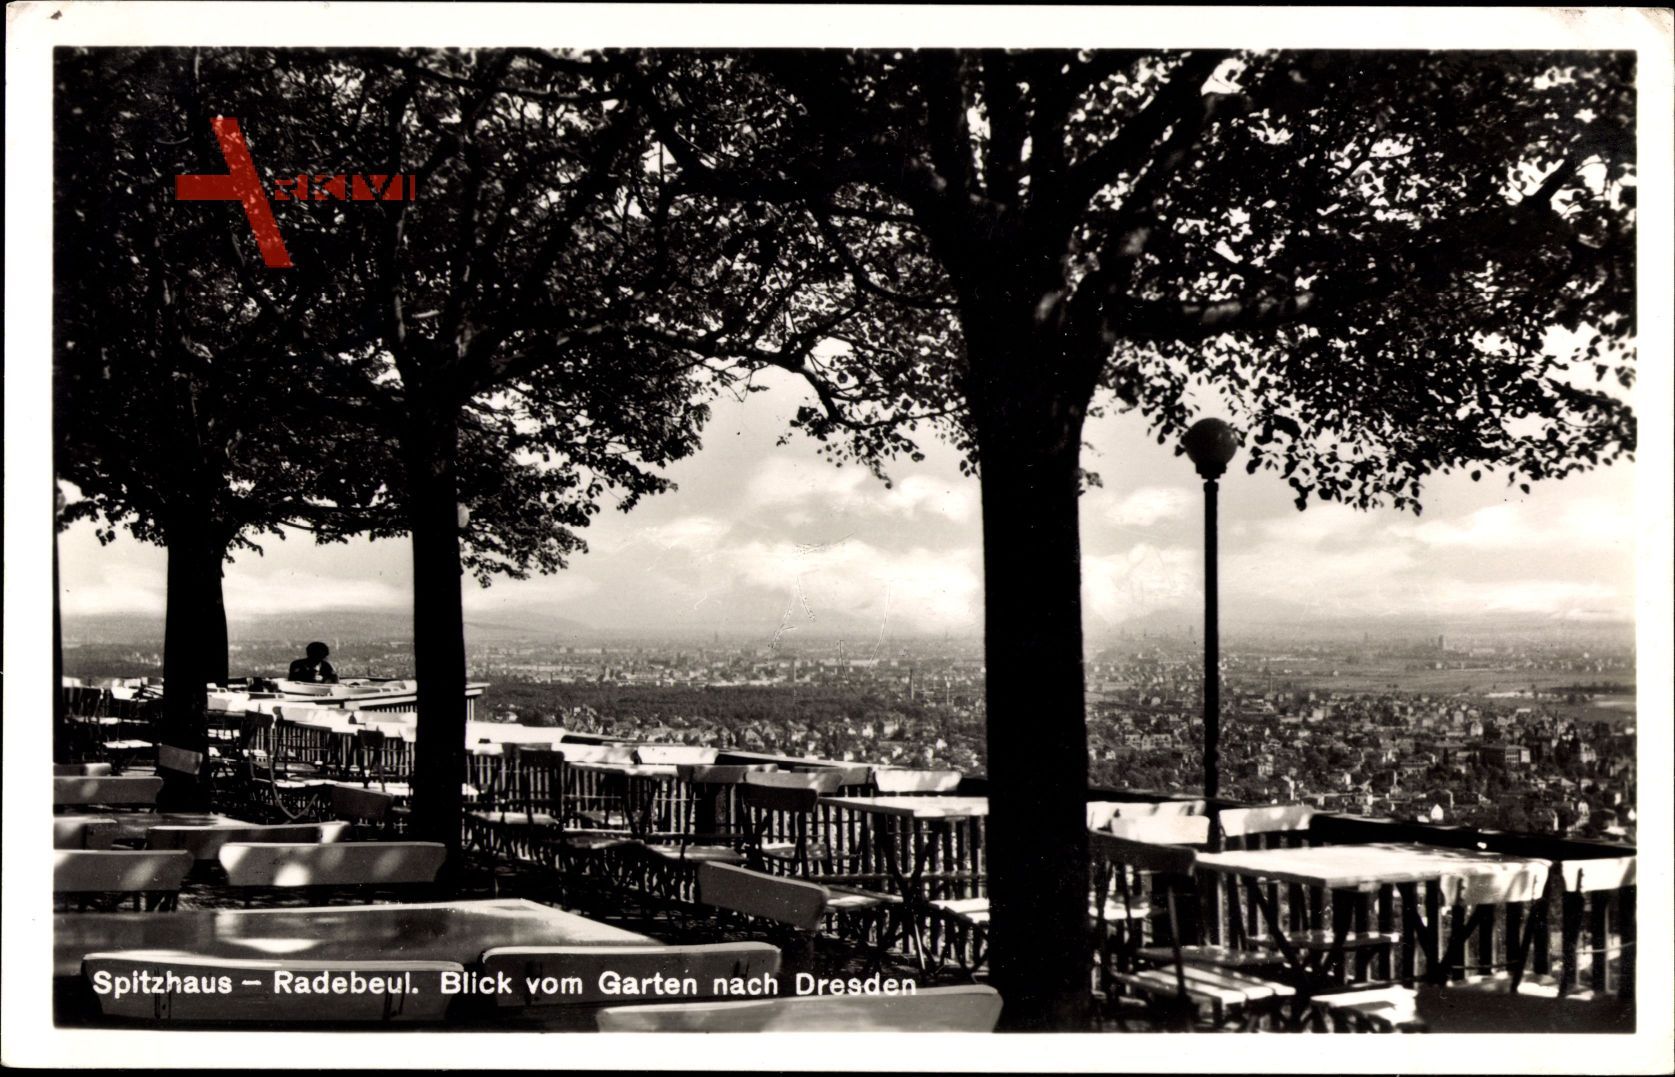 Radebeul, Spitzhaus, Blick vom Garten nach Dresden, Alfred Fischer